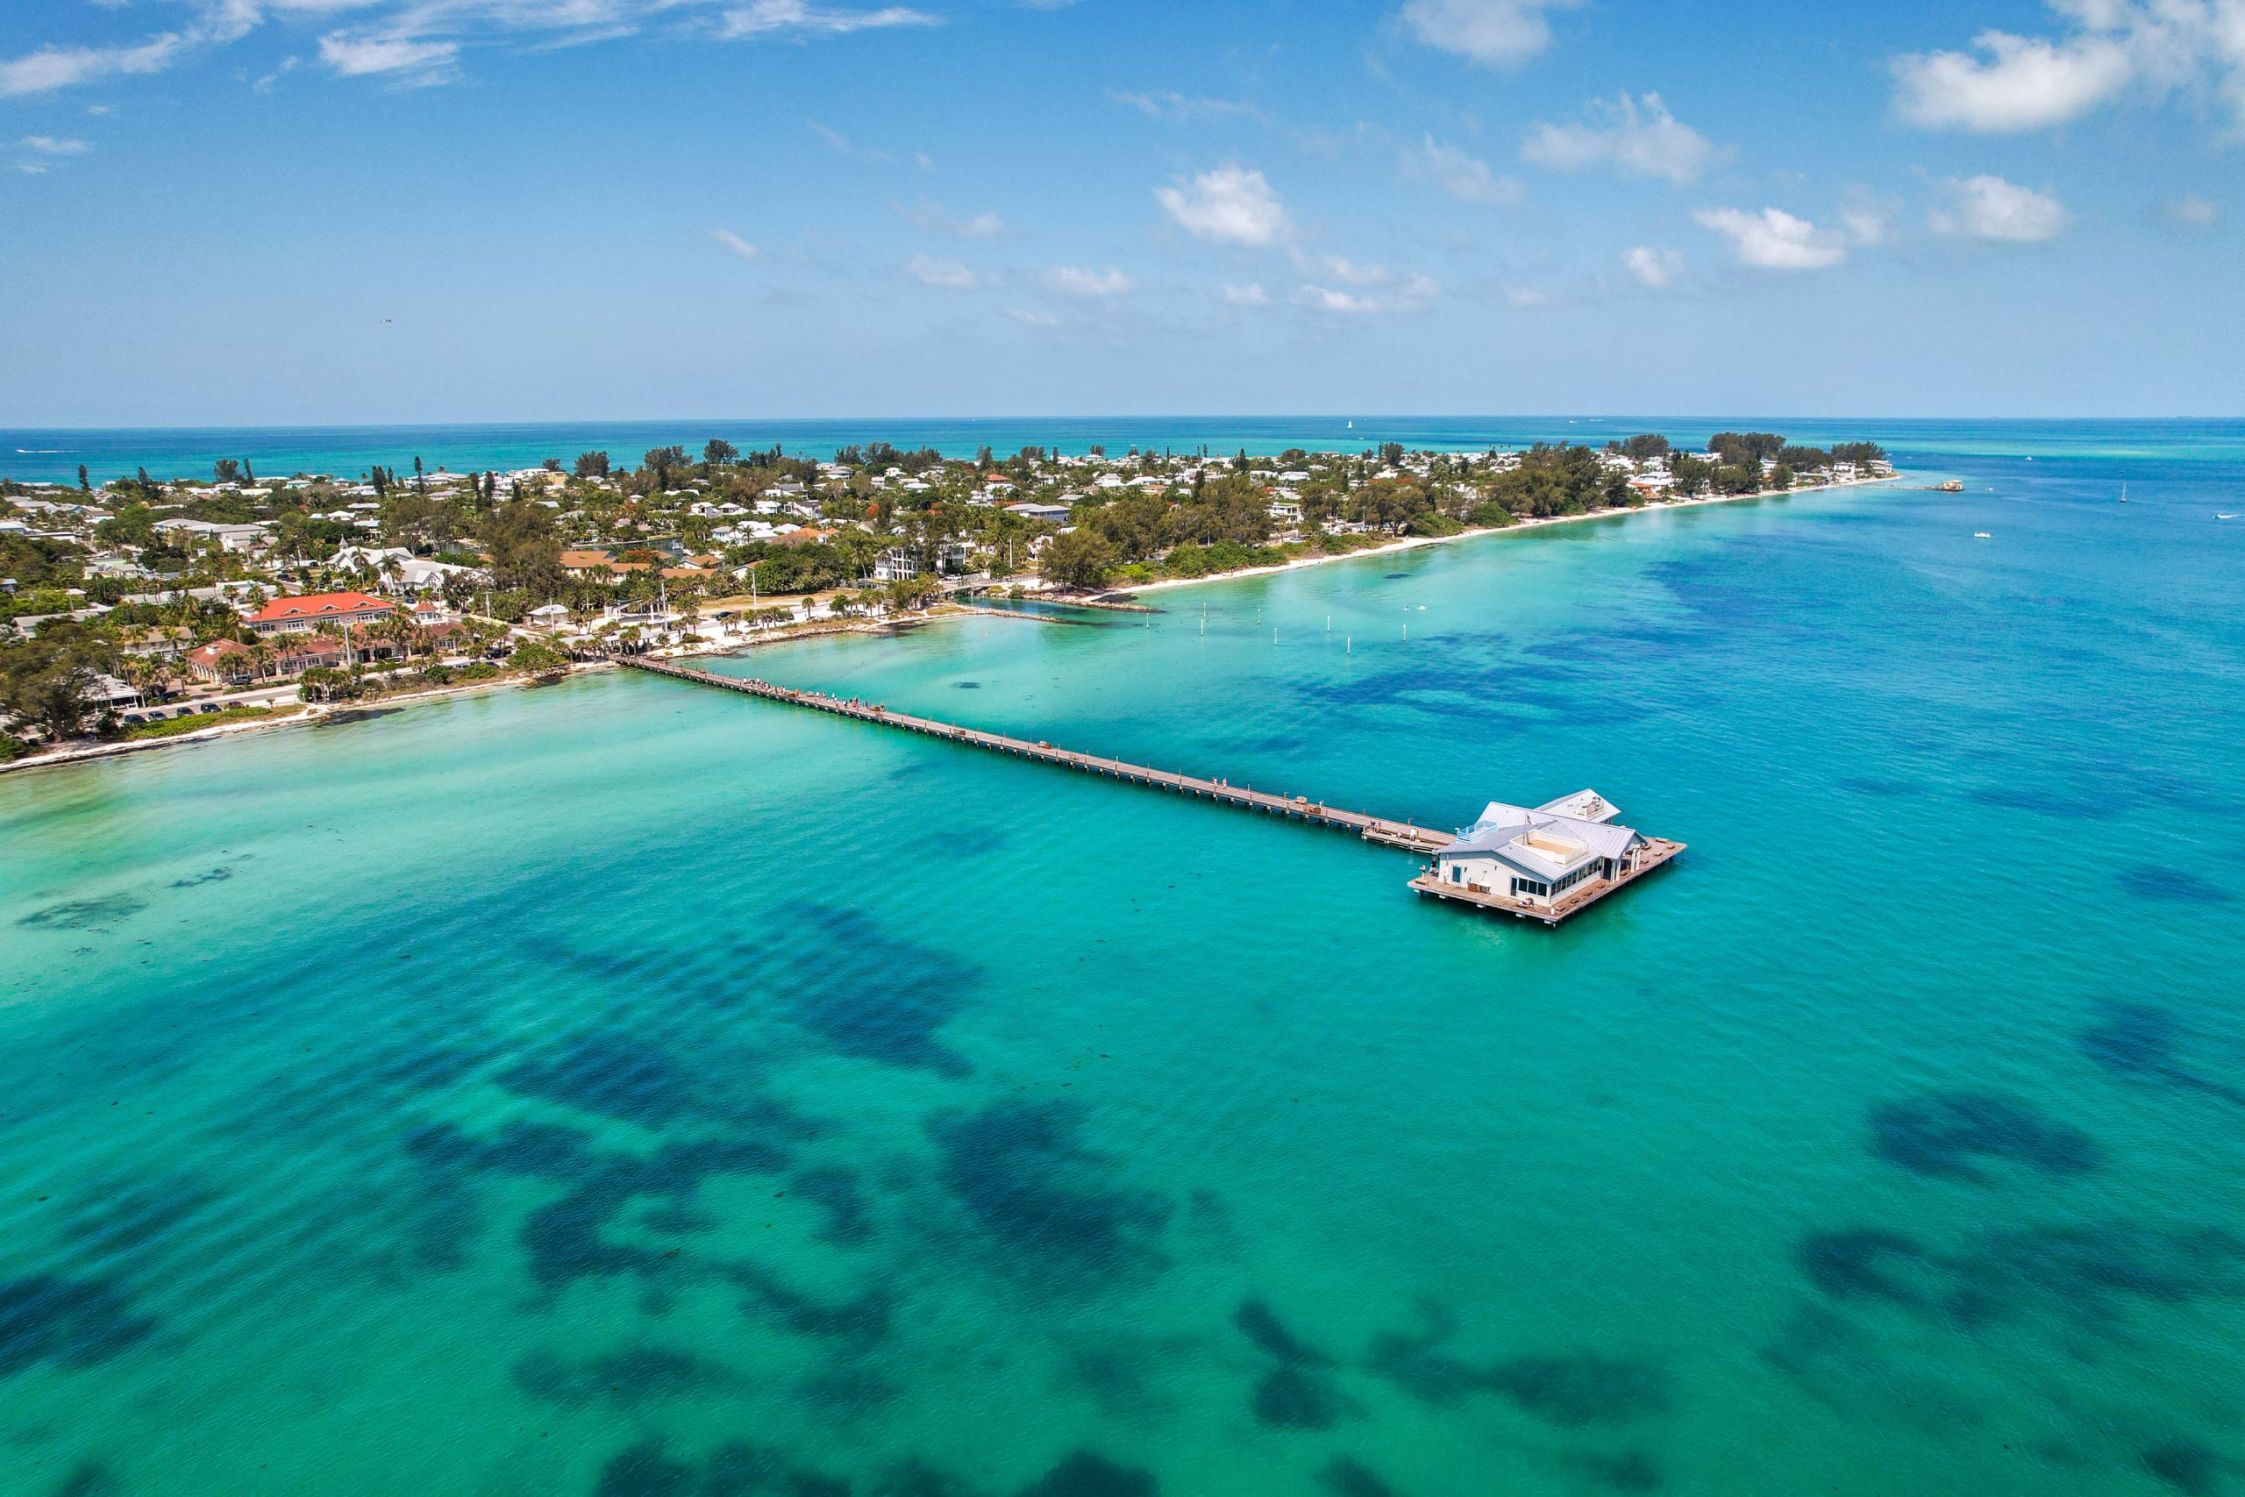 Aqua Lodge Rentals at Coconut Cay: Your Tropical Paradise Awaits